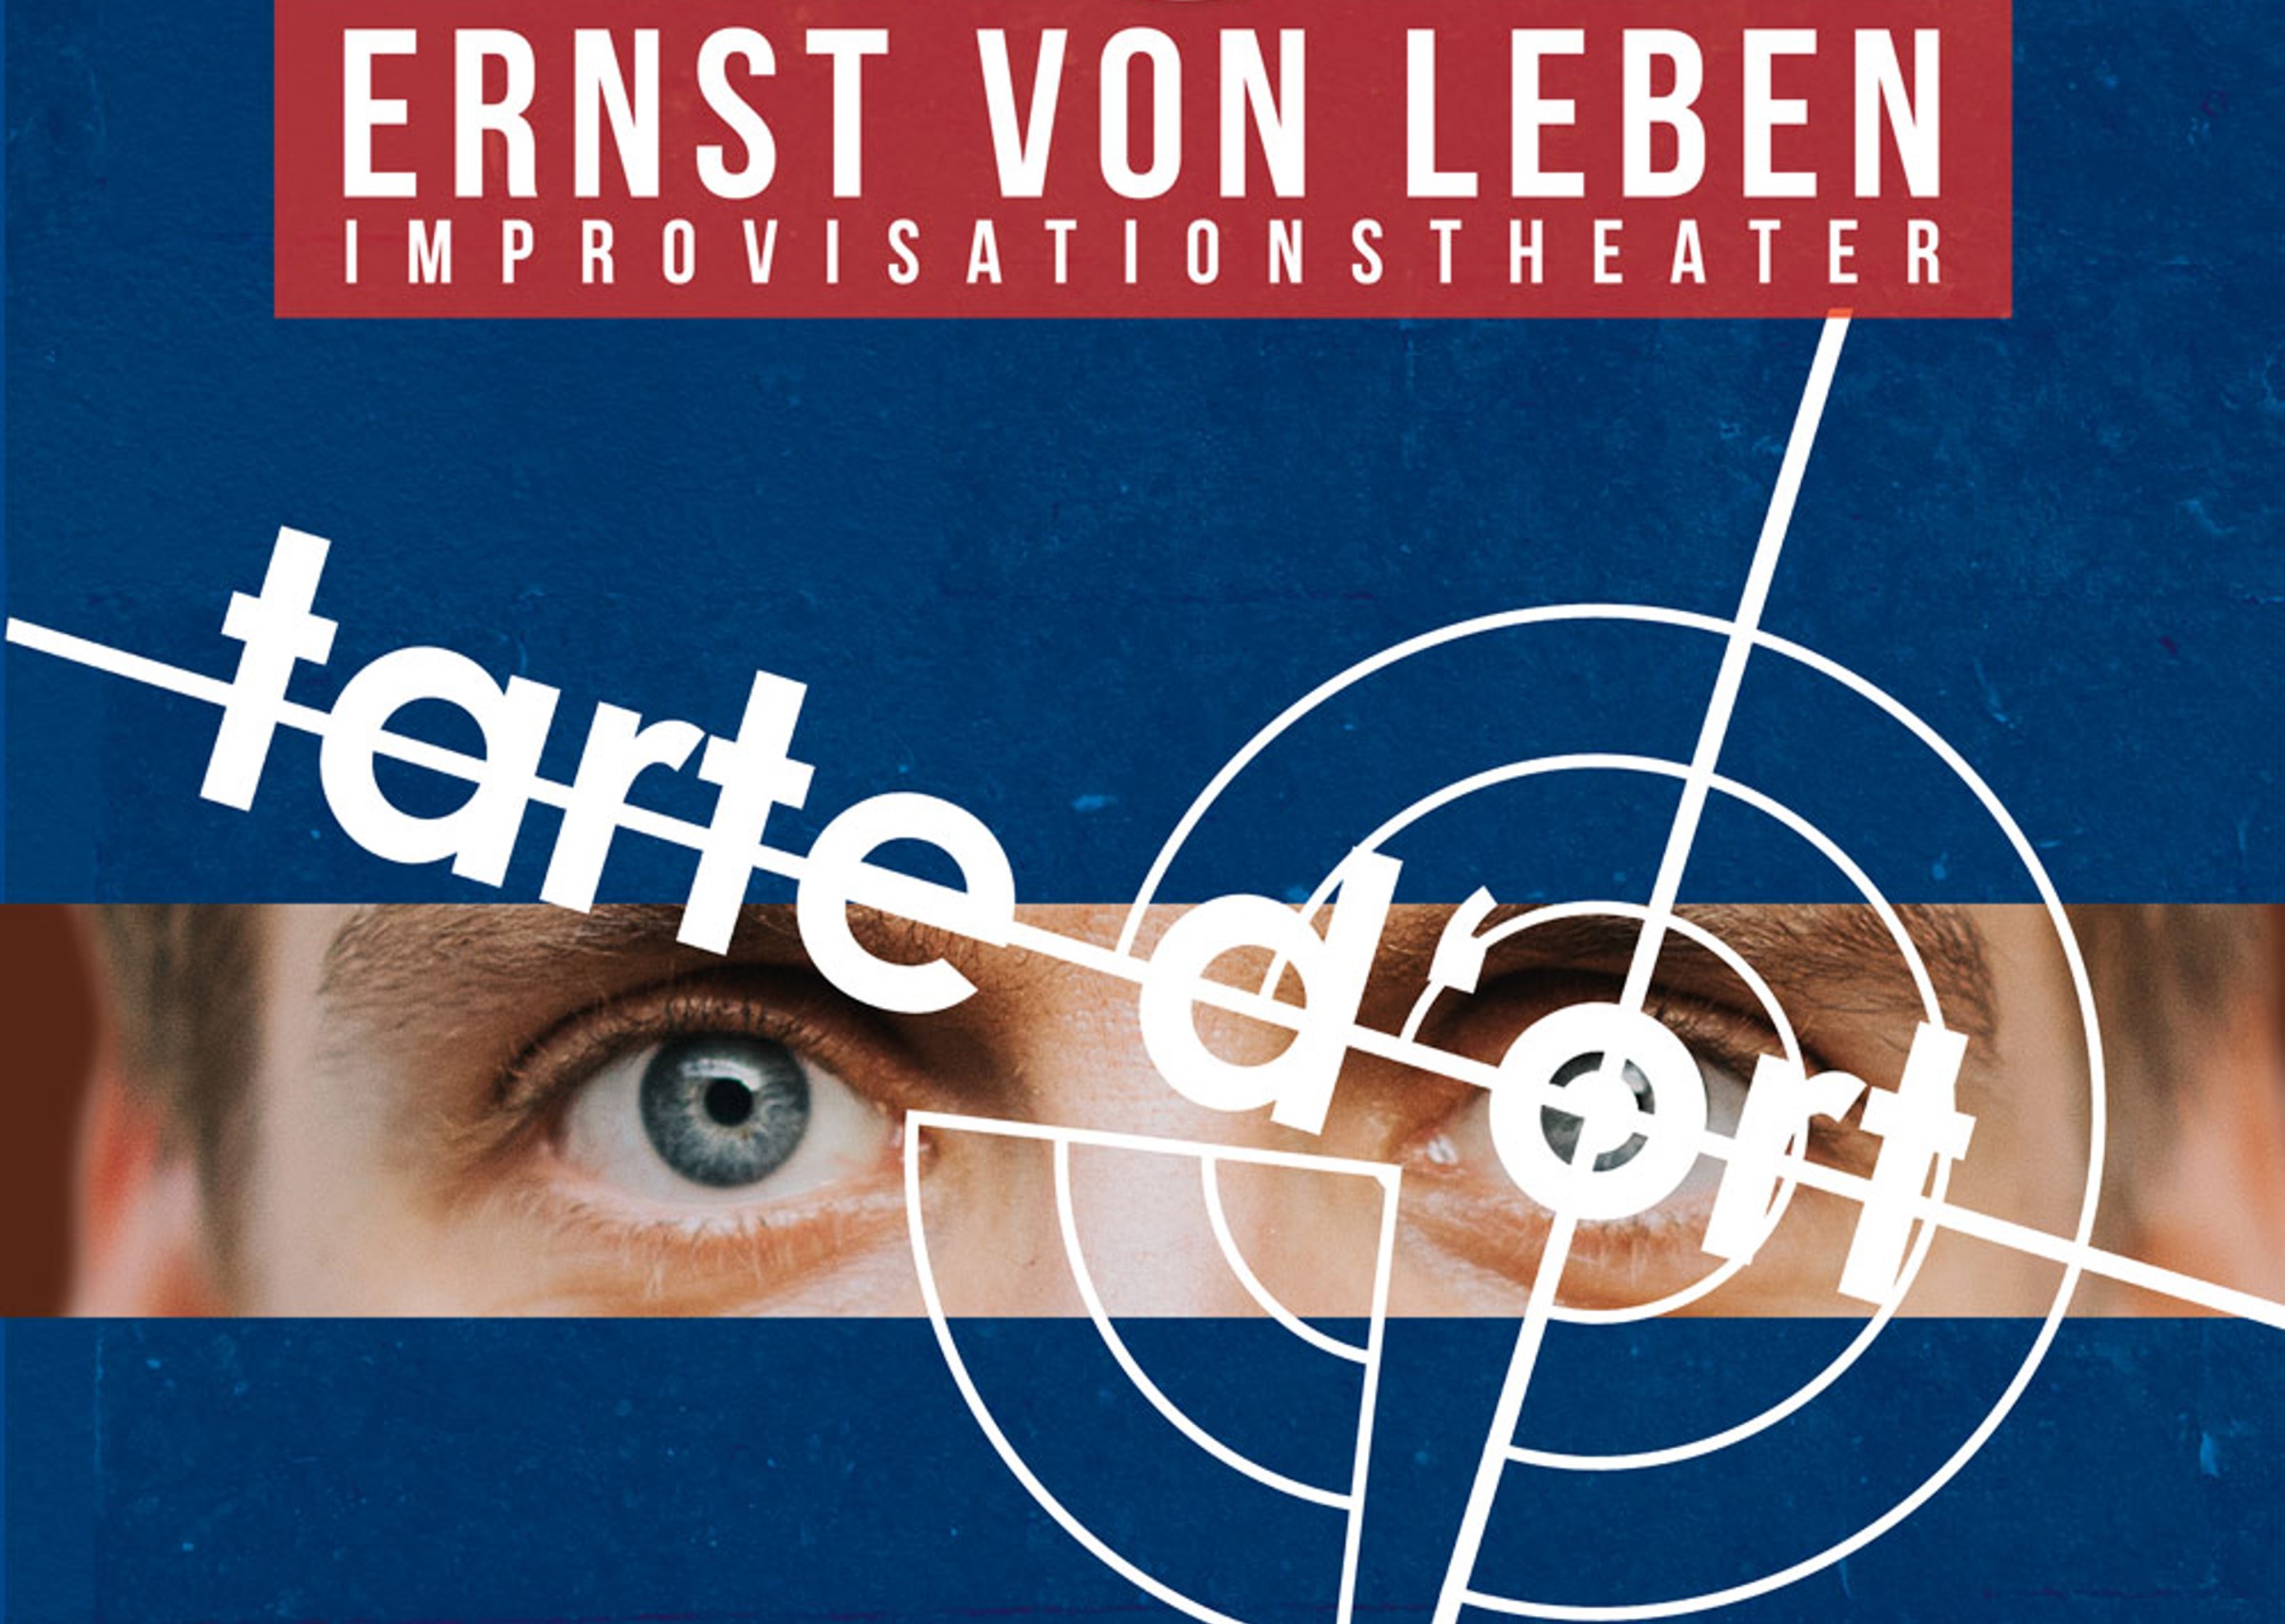 23 03 02 Ernst von Leben Tarte d ort Plakat Grafik David Luis Grimm Website